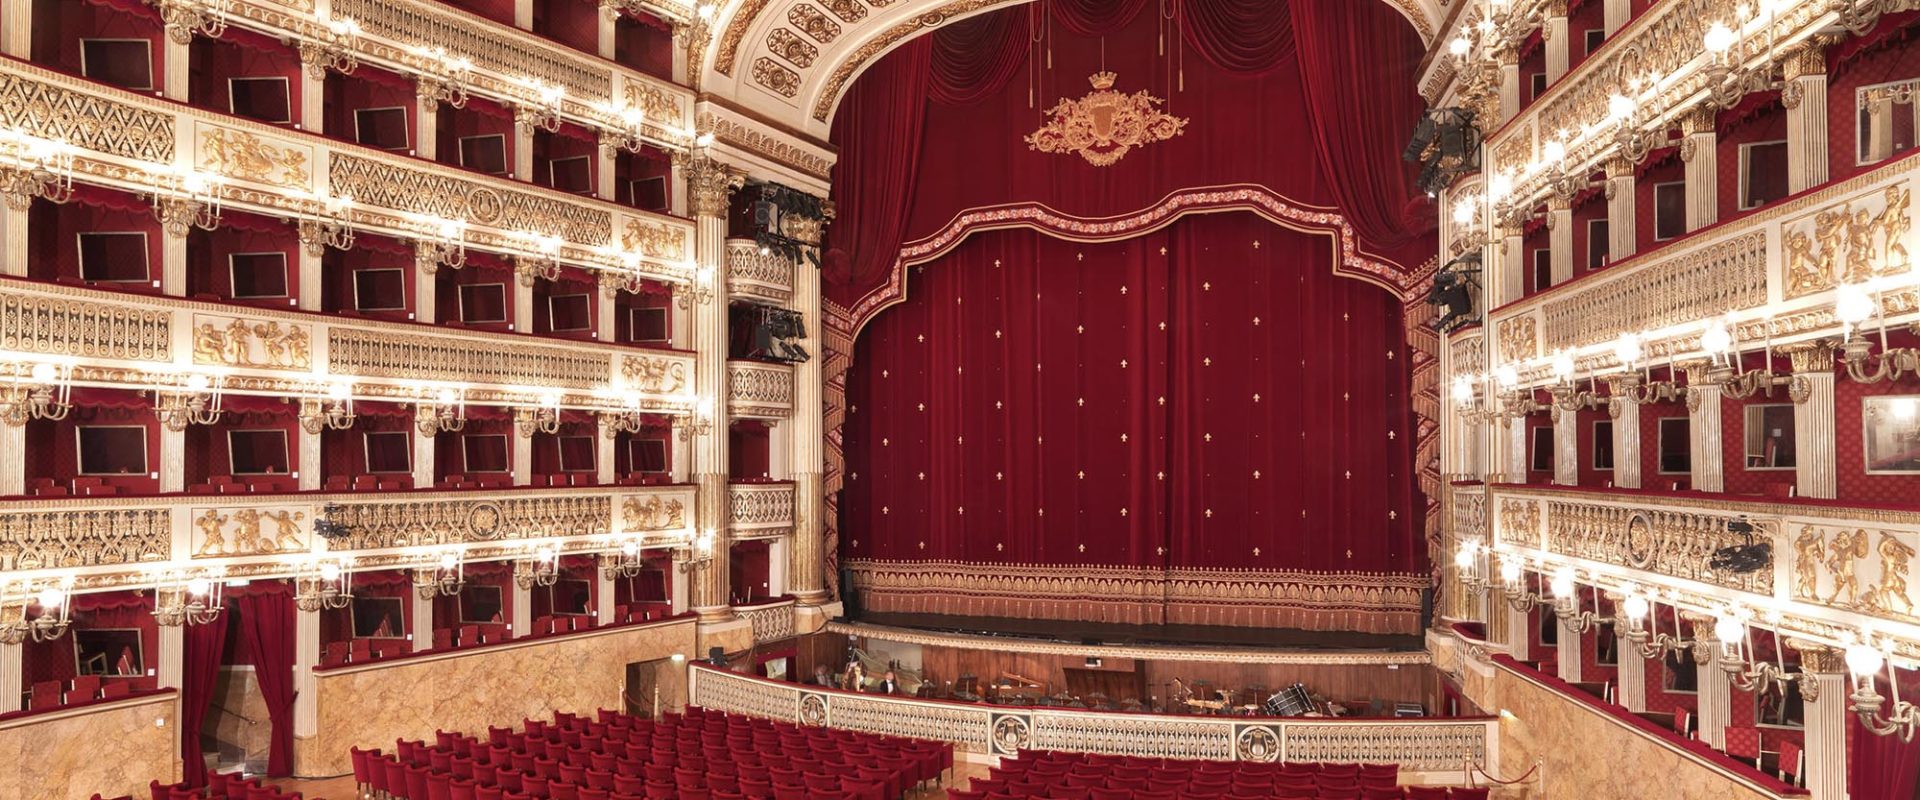 Real Teatro di San Carlo